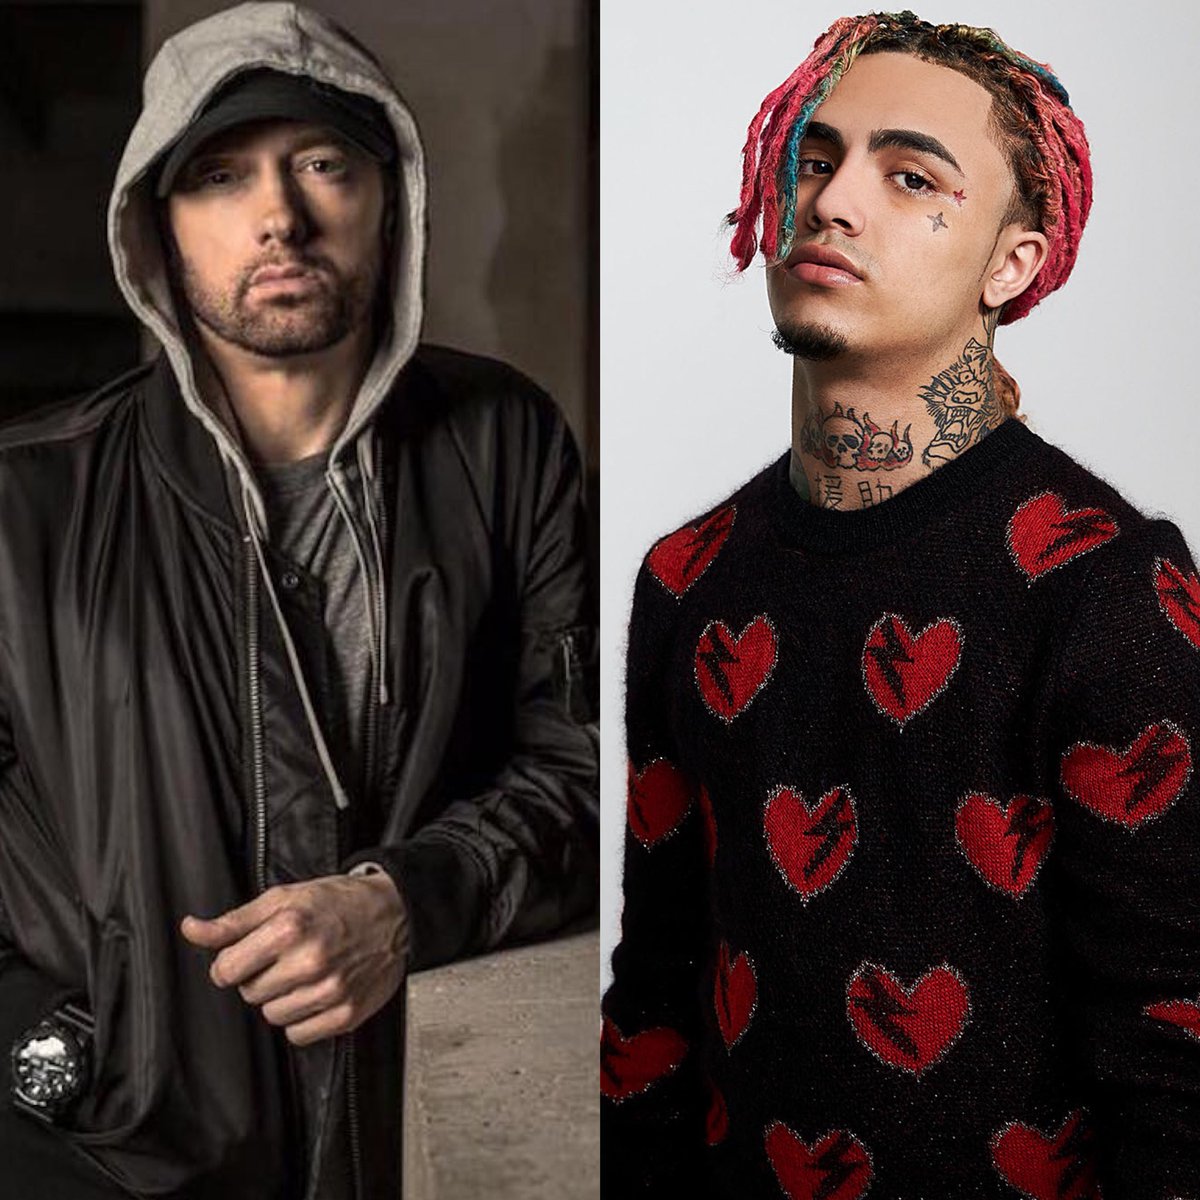 Lil Pump Calls Out Eminem - Calls Him Lame On Instagram